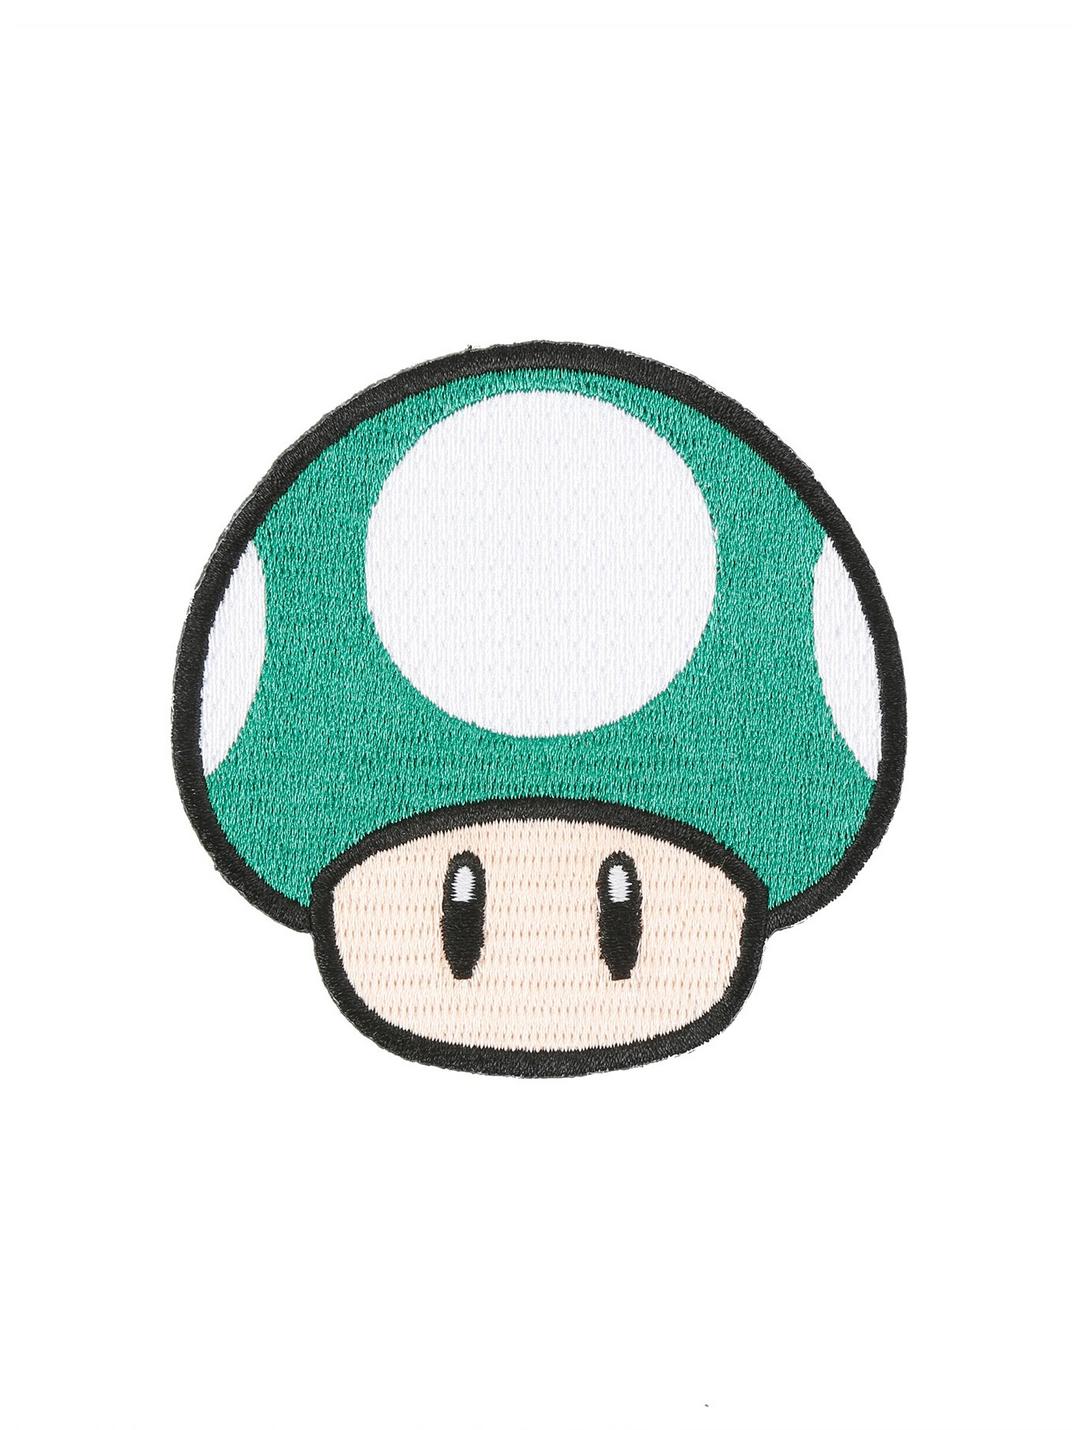 Super Mario 1-Up Mushroom Iron-On Patch, , hi-res